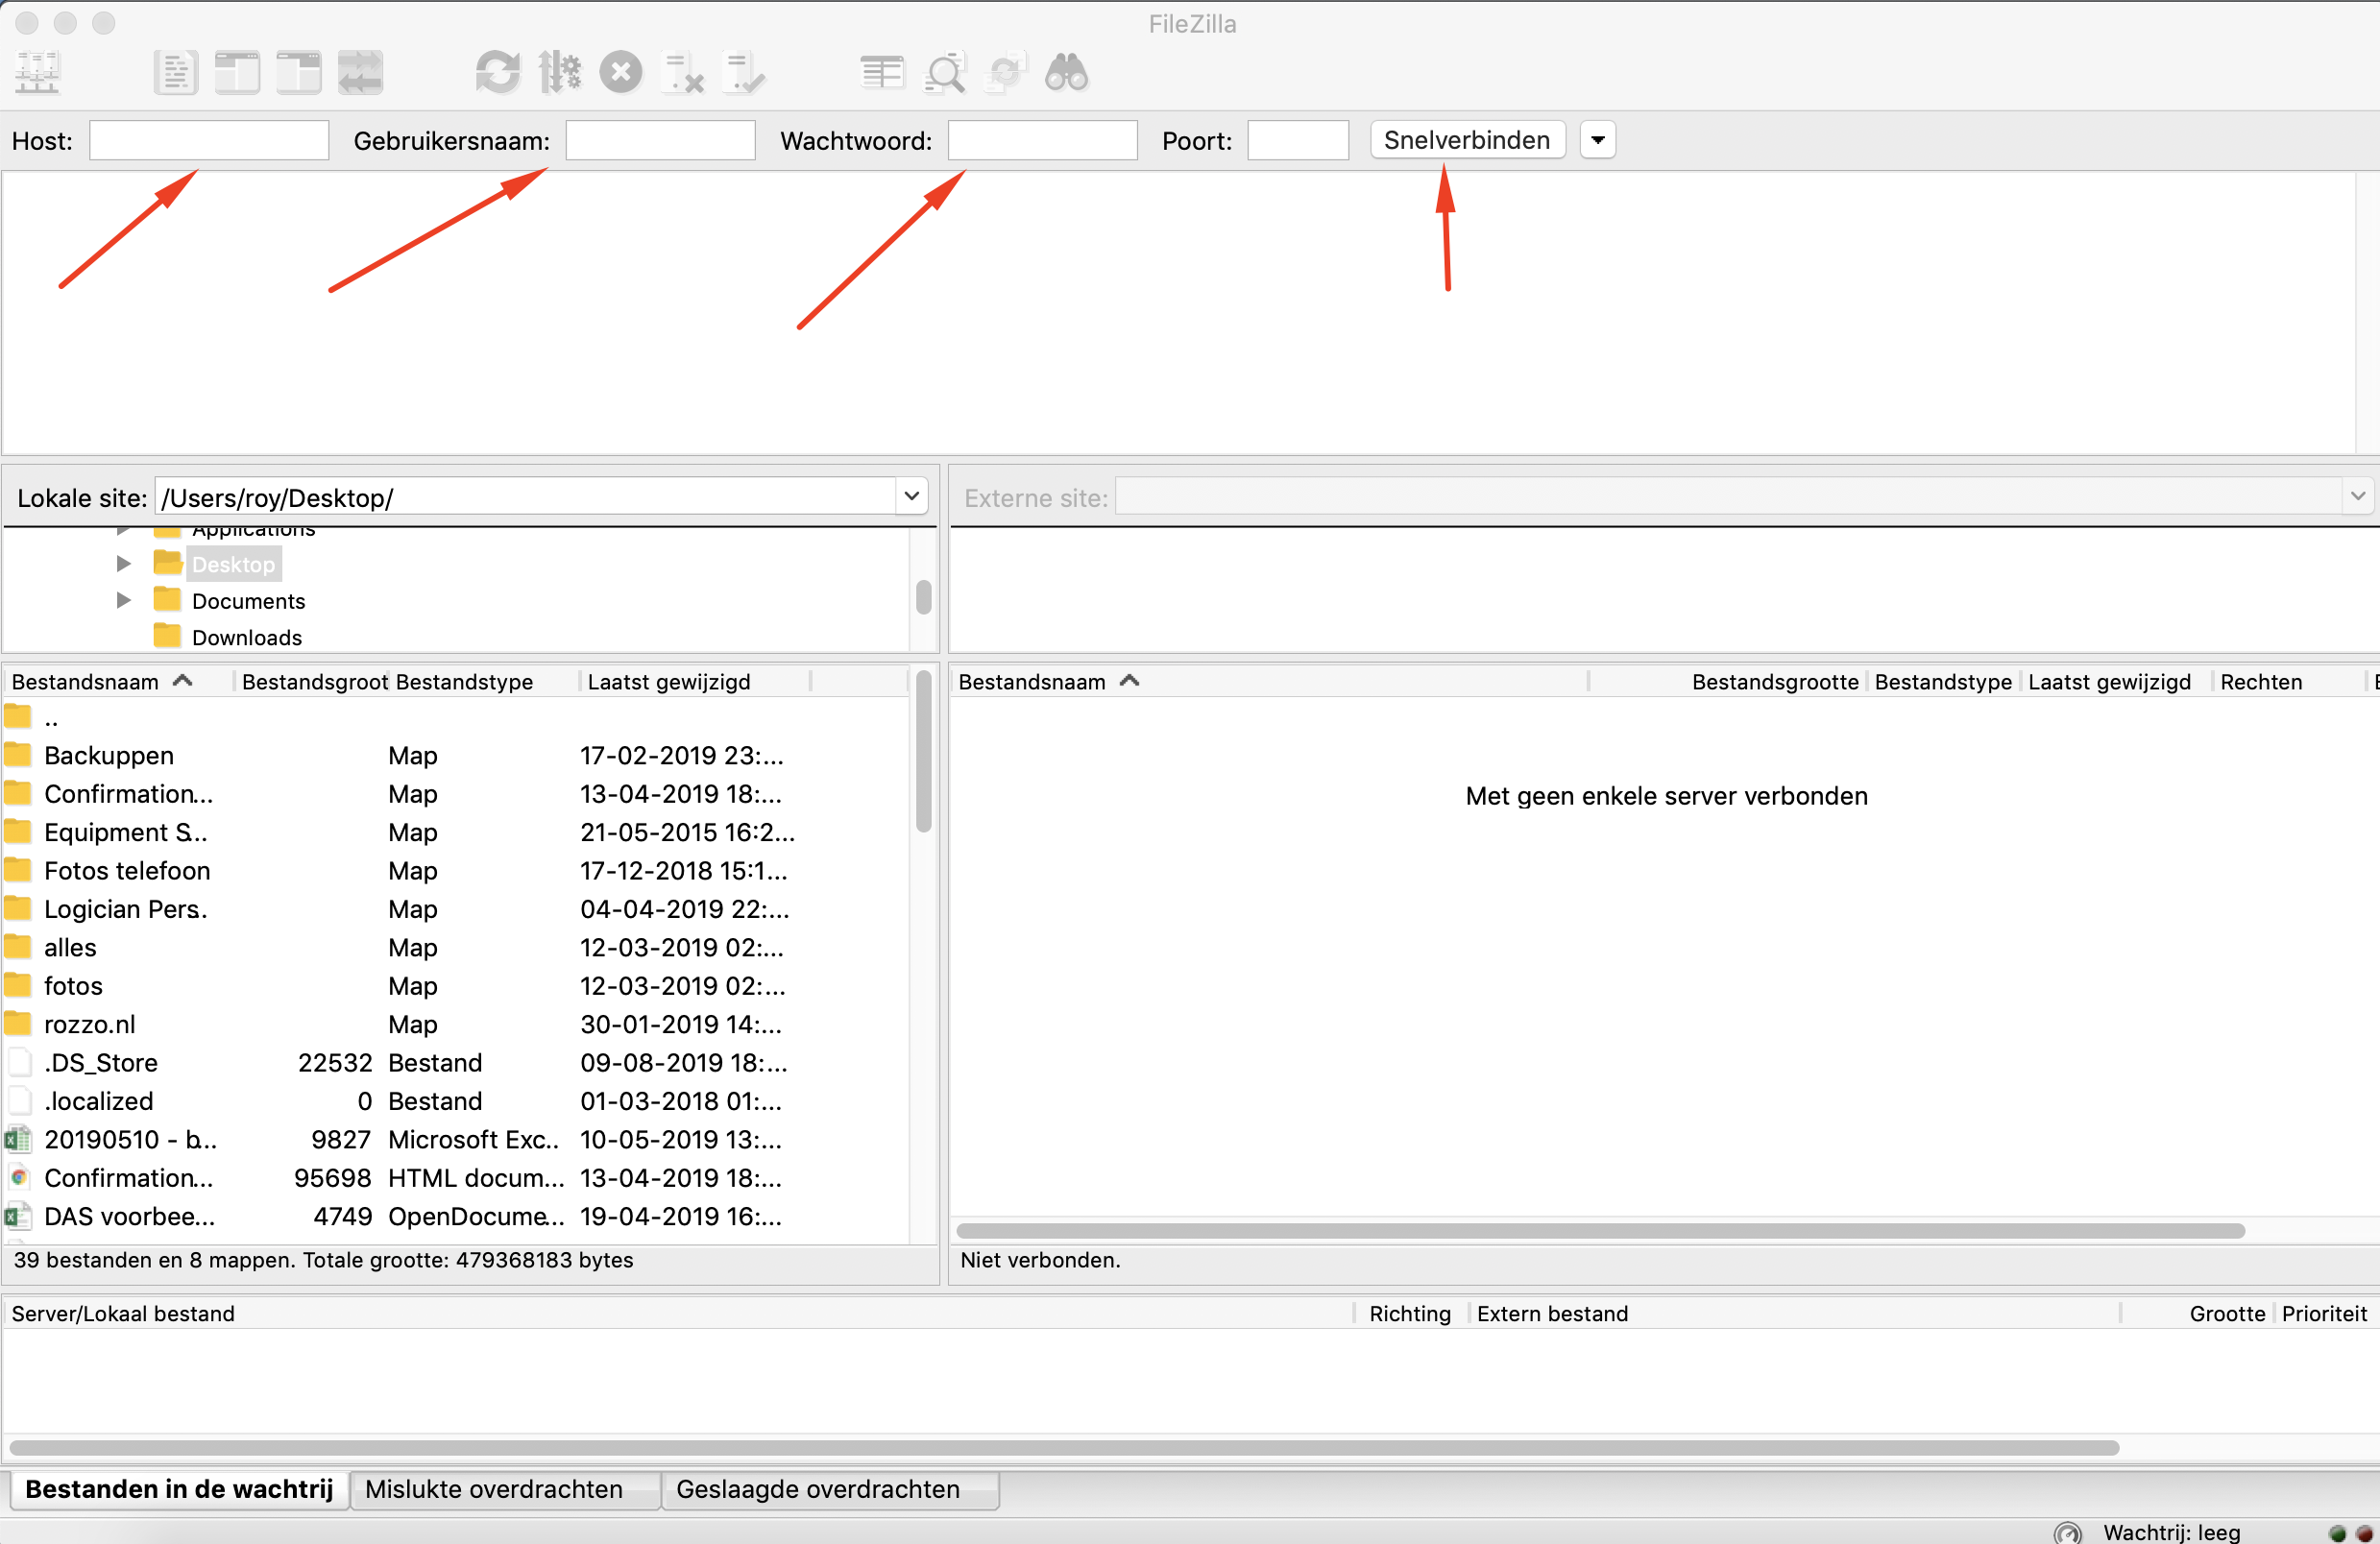 Schermafbeelding van FileZille. Rode pijlen wijzen aan waar je de FTP gegevens kunt invullen om een verbinding te maken.